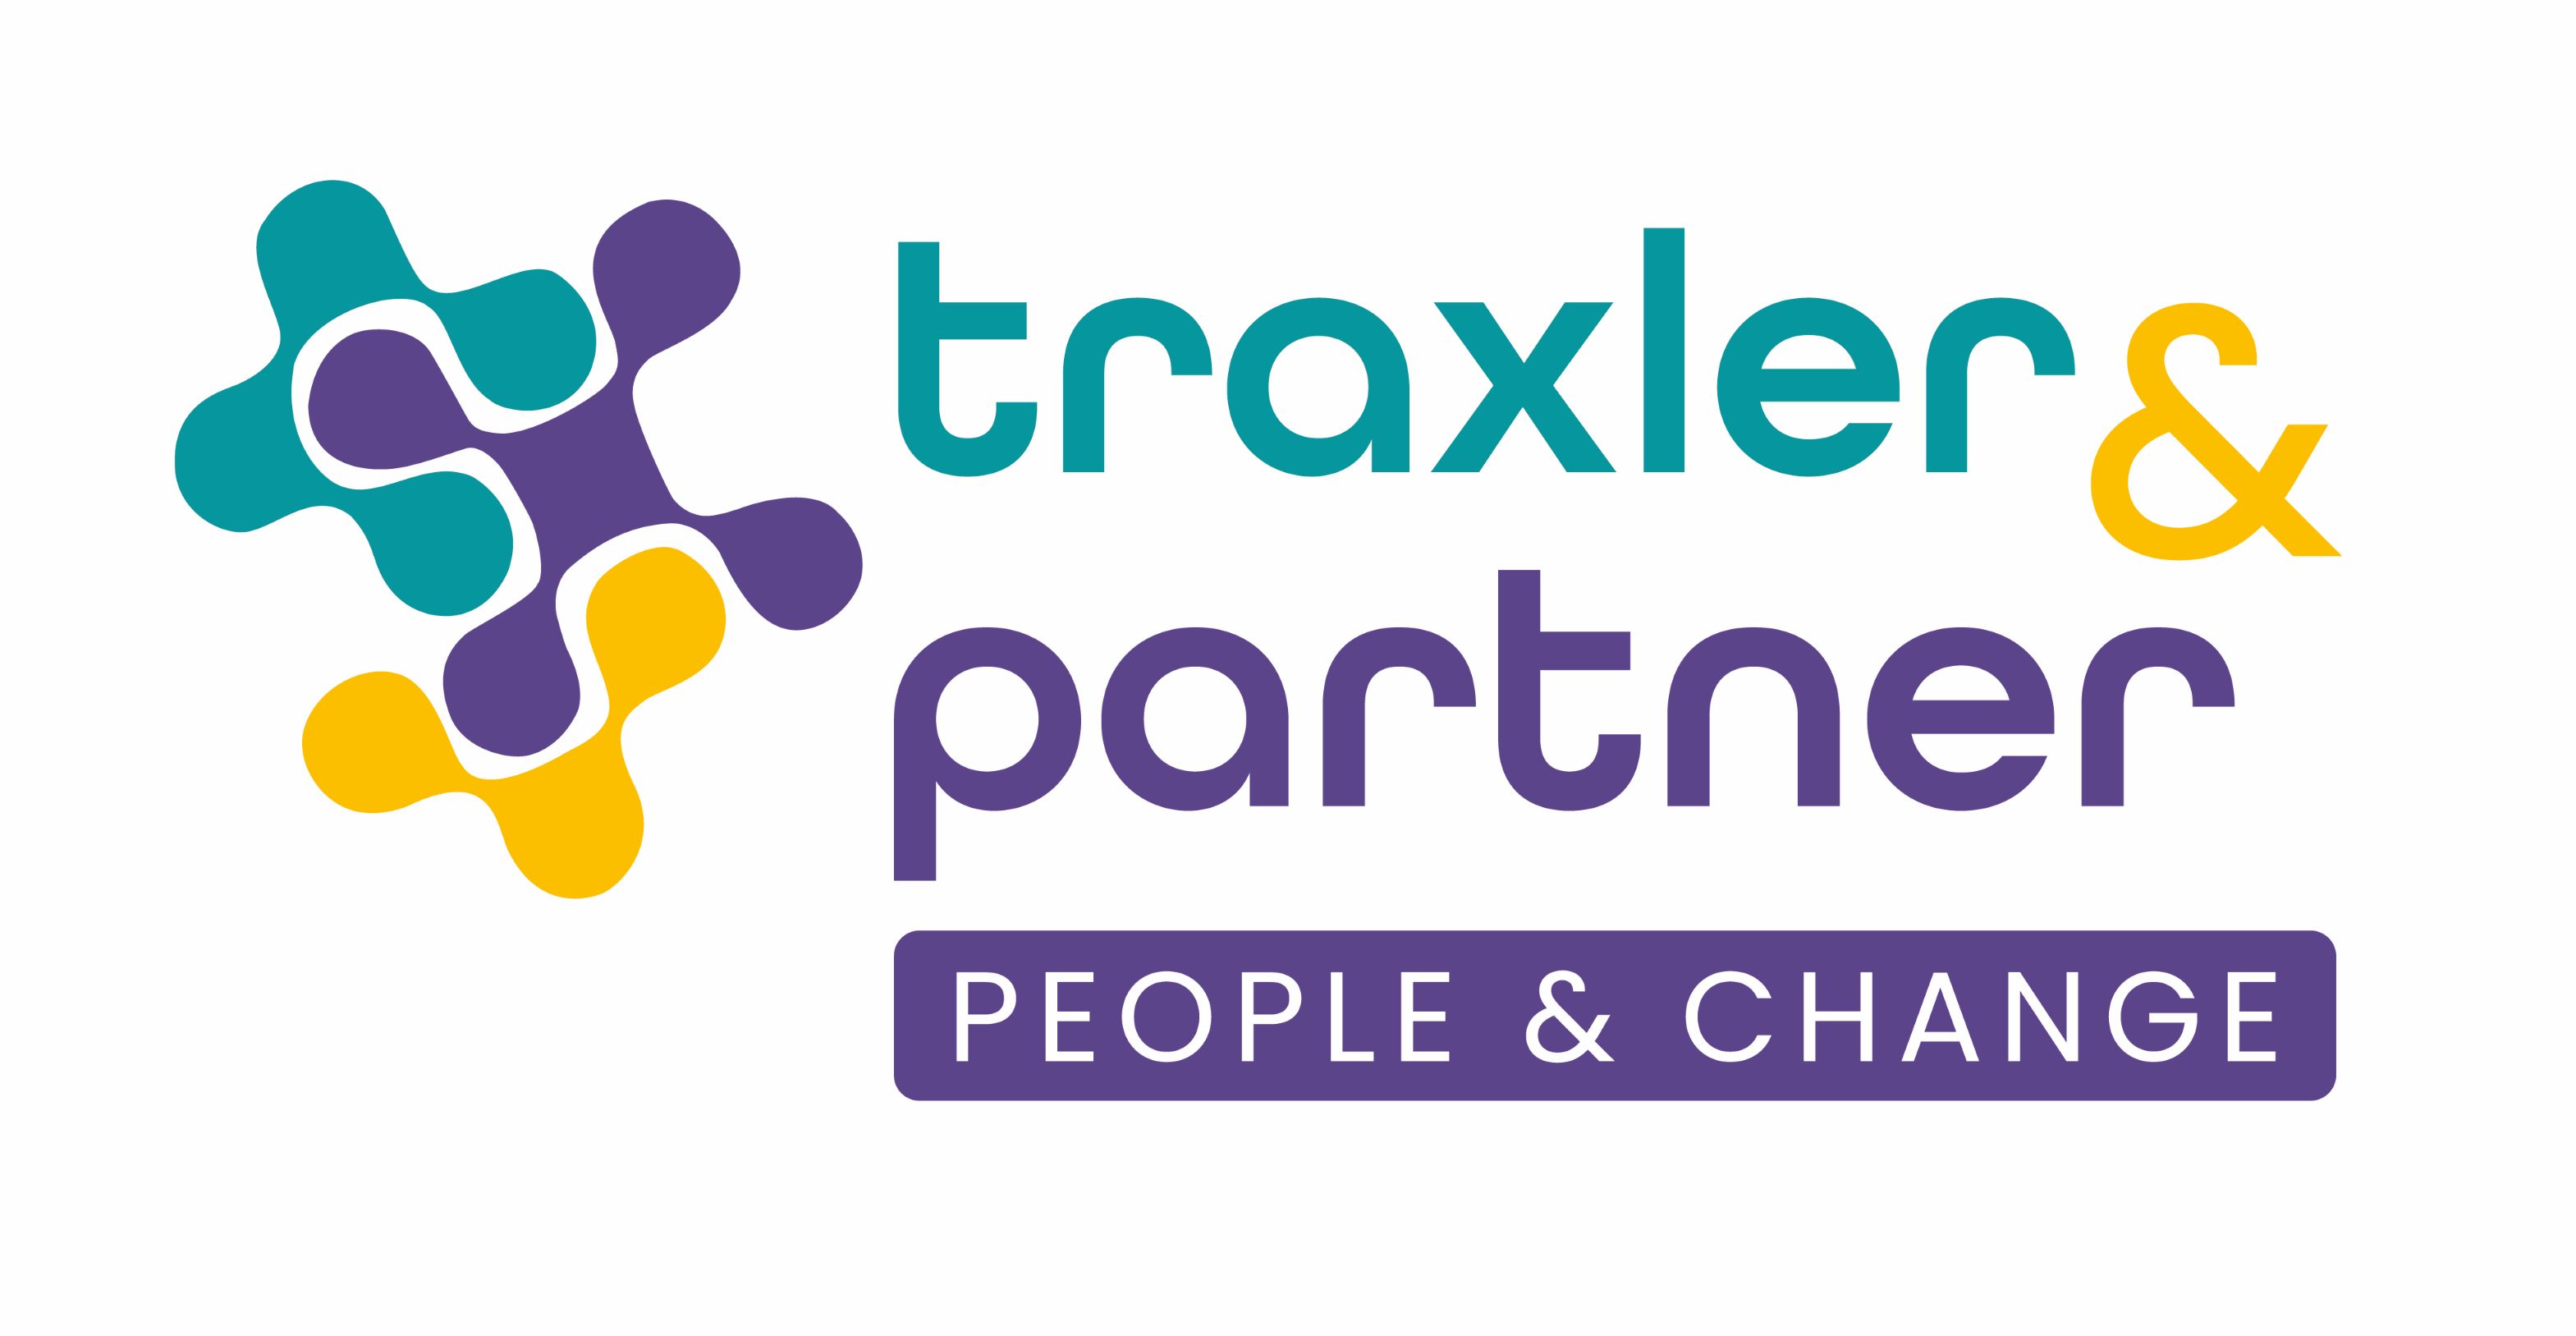 Traxler und Partner GmbH